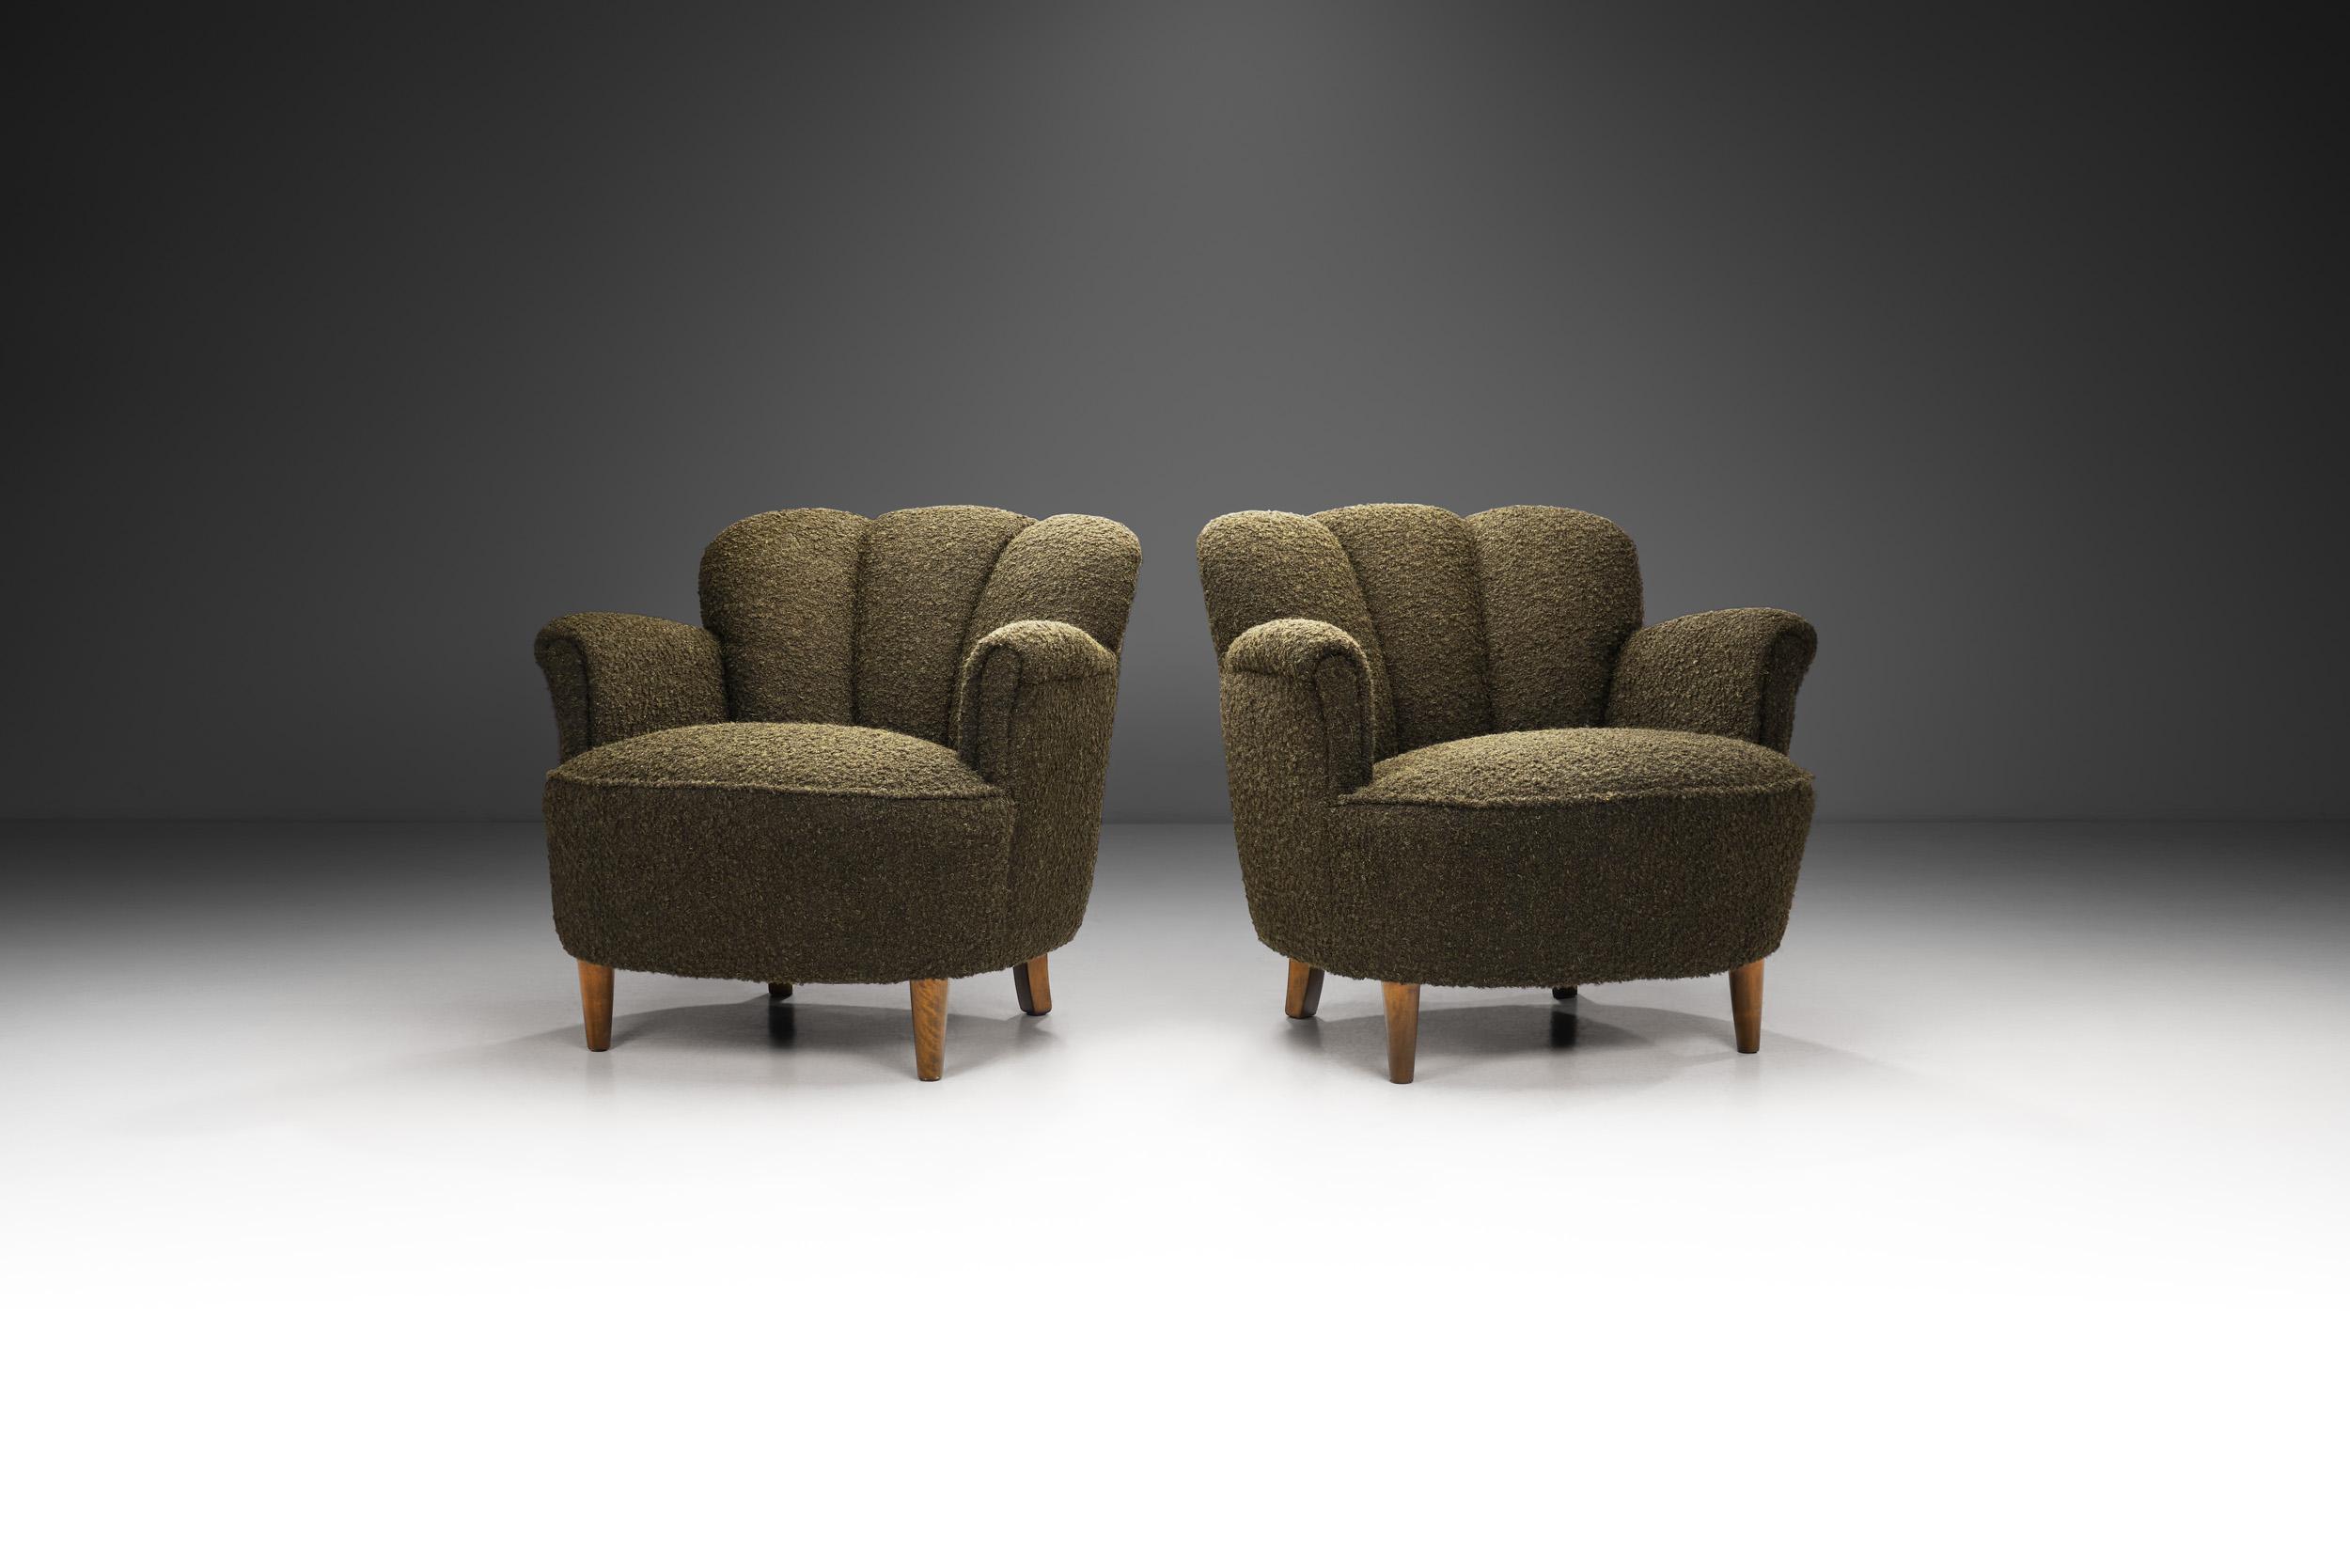 In der glamourösen Designwelt der 1930er Jahre in Europa entstanden außergewöhnliche Sitzmöbel, die bis heute die Eleganz des Art déco verkörpern. Diese Loungesessel verströmen mit ihren charakteristischen Merkmalen den Geist dieser Zeit und bleiben